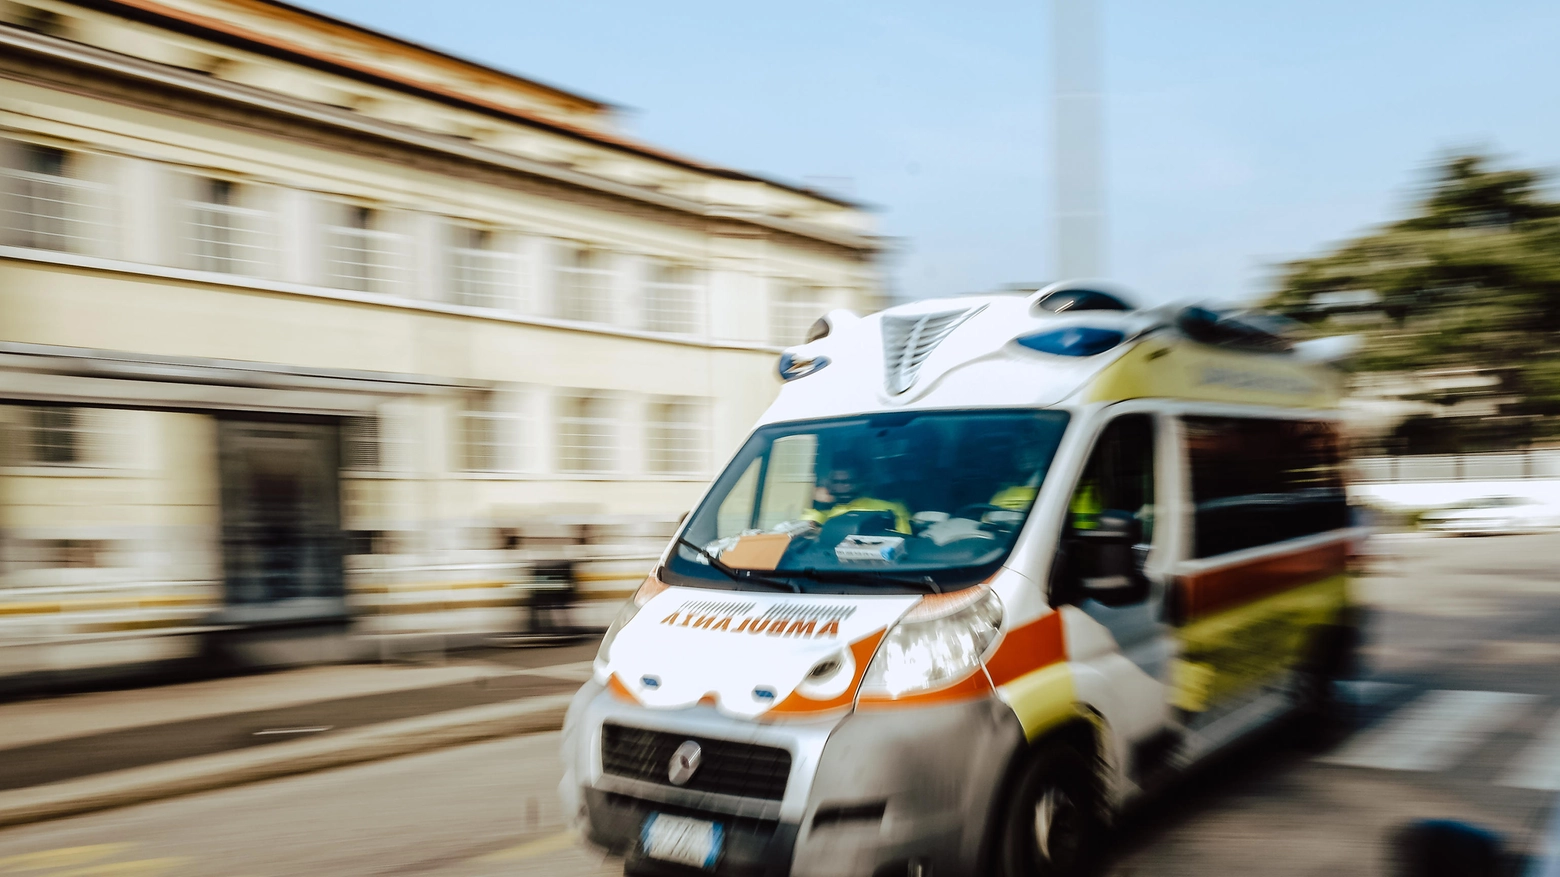 Ambulanza (immagini d'archivio)